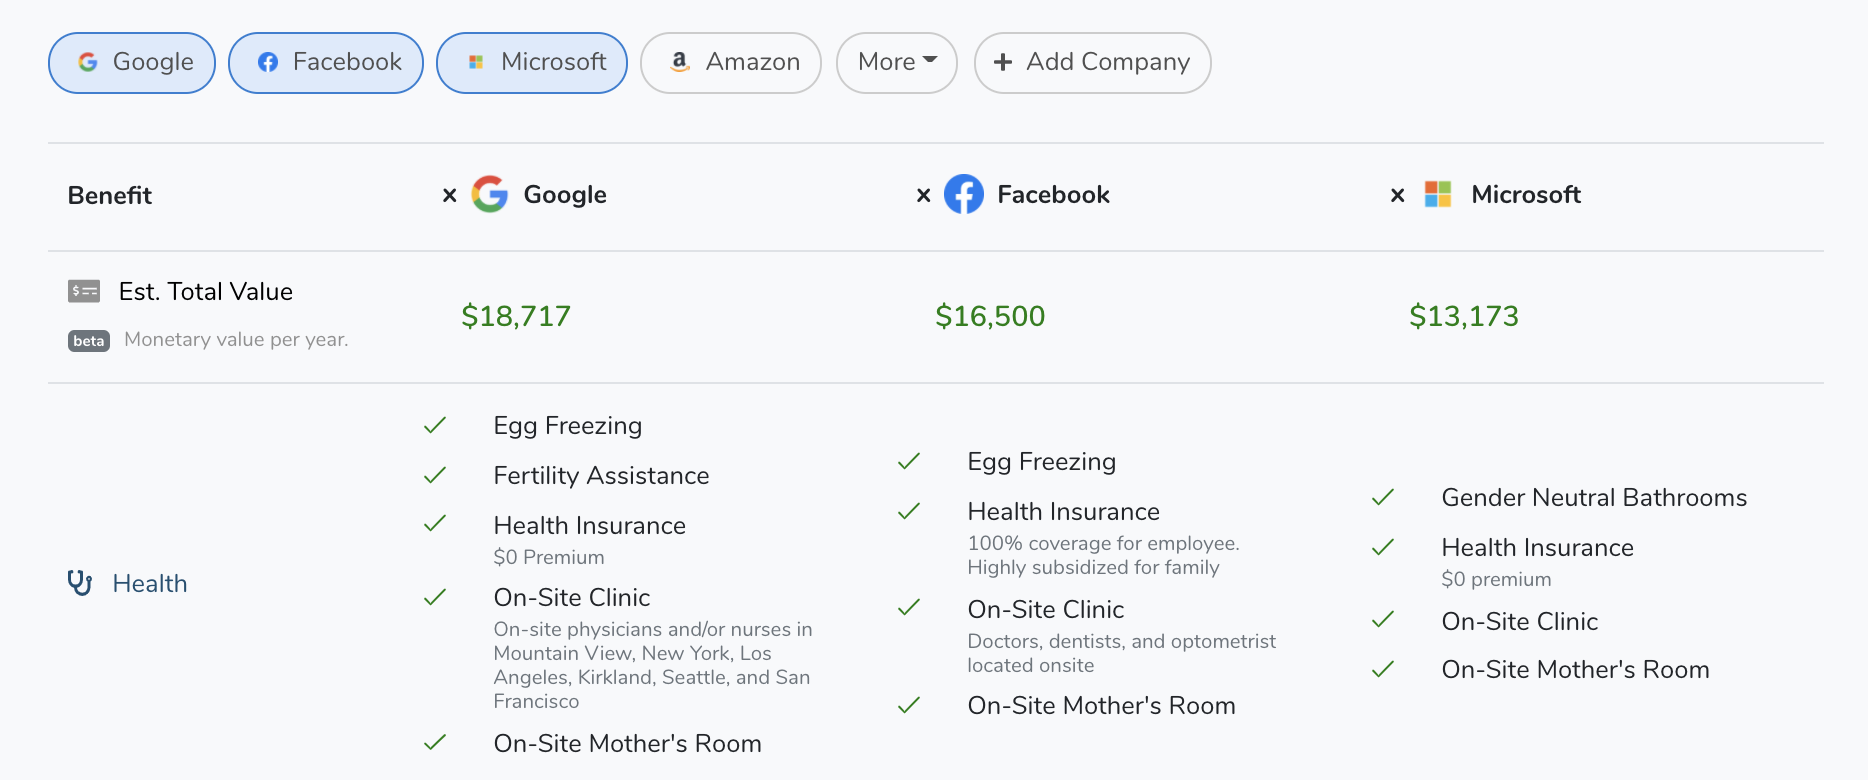 Google vs Facebook vs Microsoft Benefits